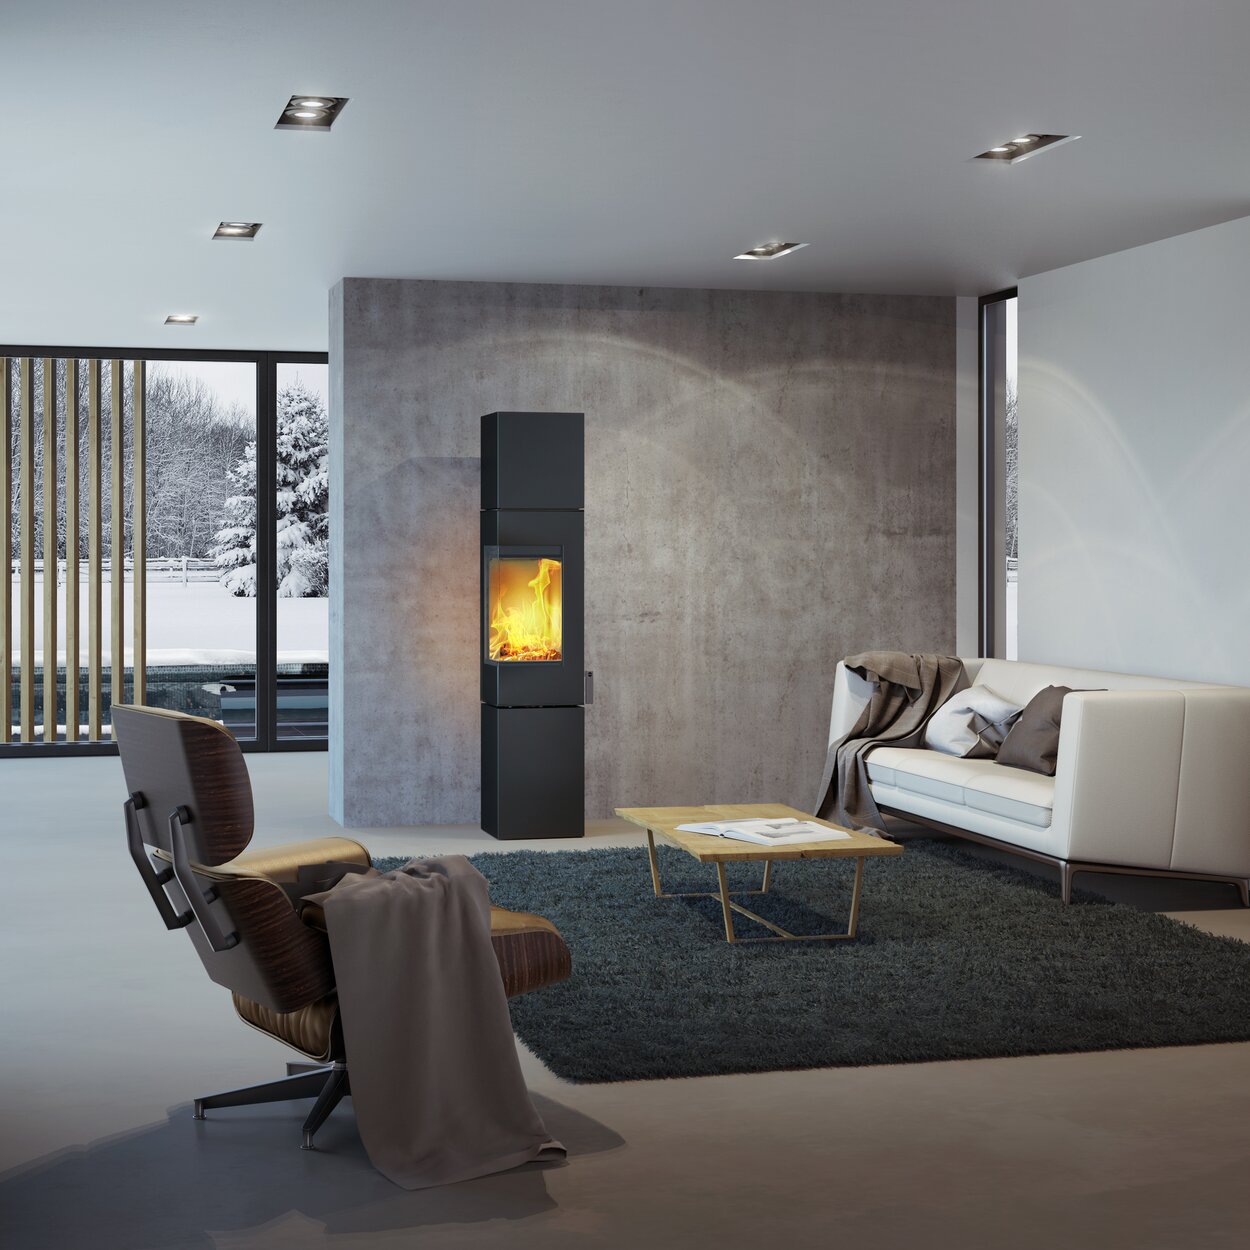 Poêle à bois Q-BE XL en noir avec porte en acier dans un salon moderne entouré d'un beau paysage enneigé